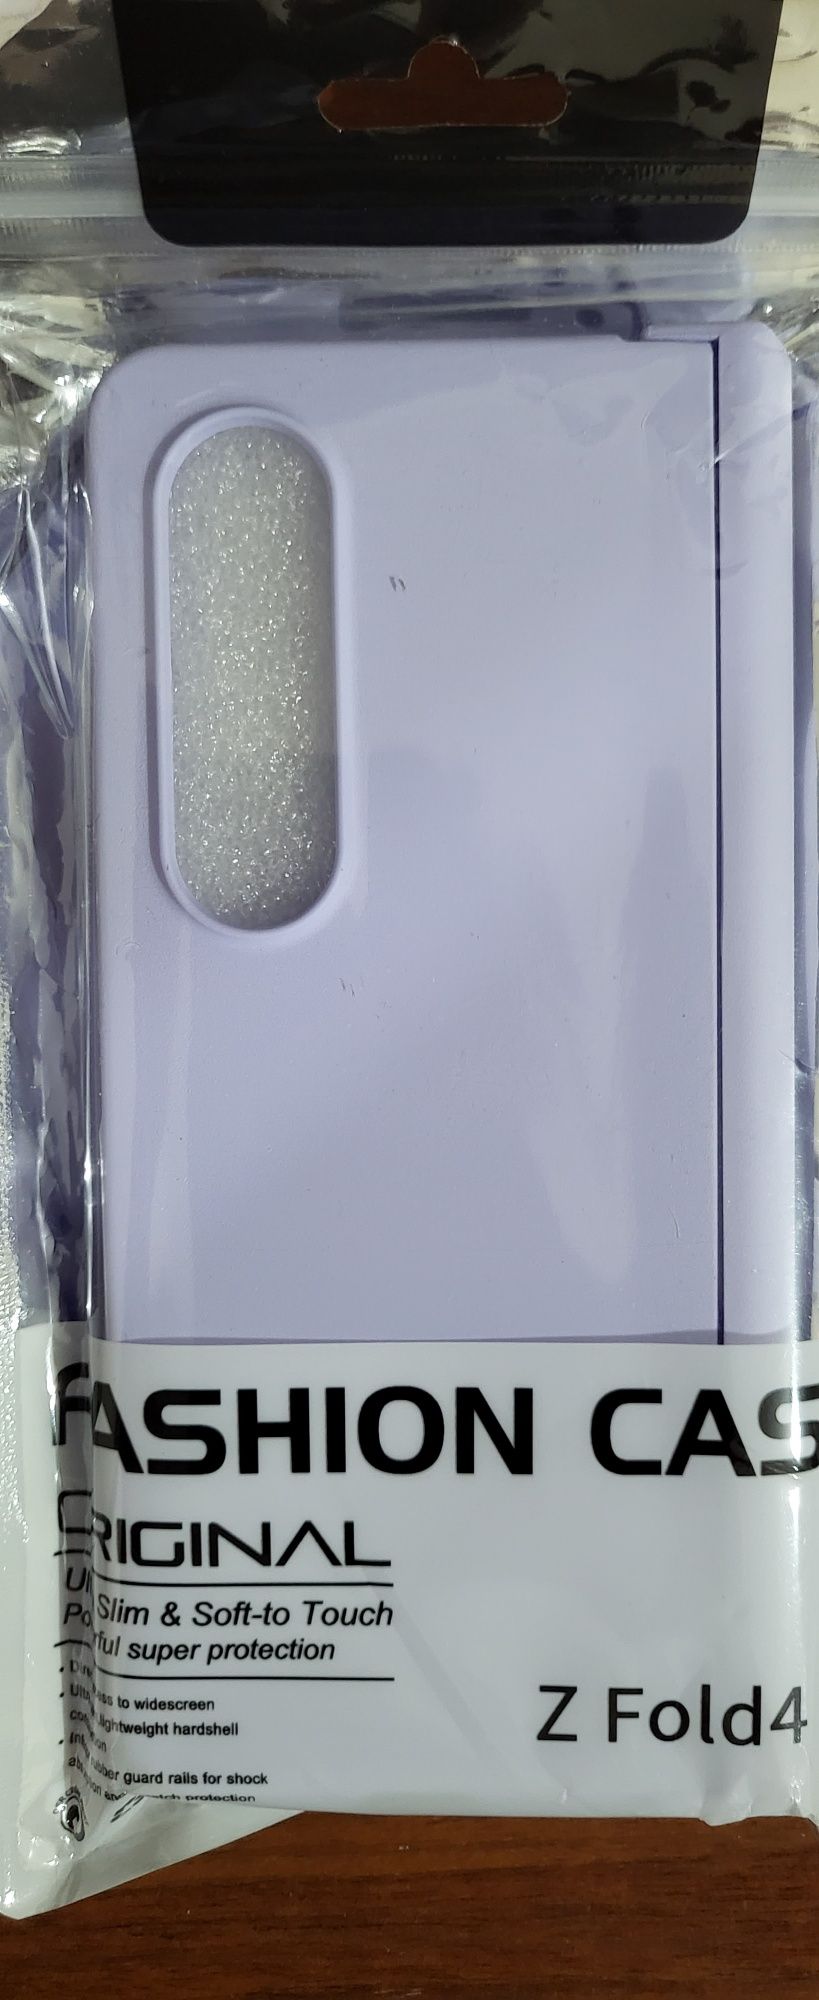 Чехлы для Samsung Galaxy Z Fold 4 
с 3 элементами